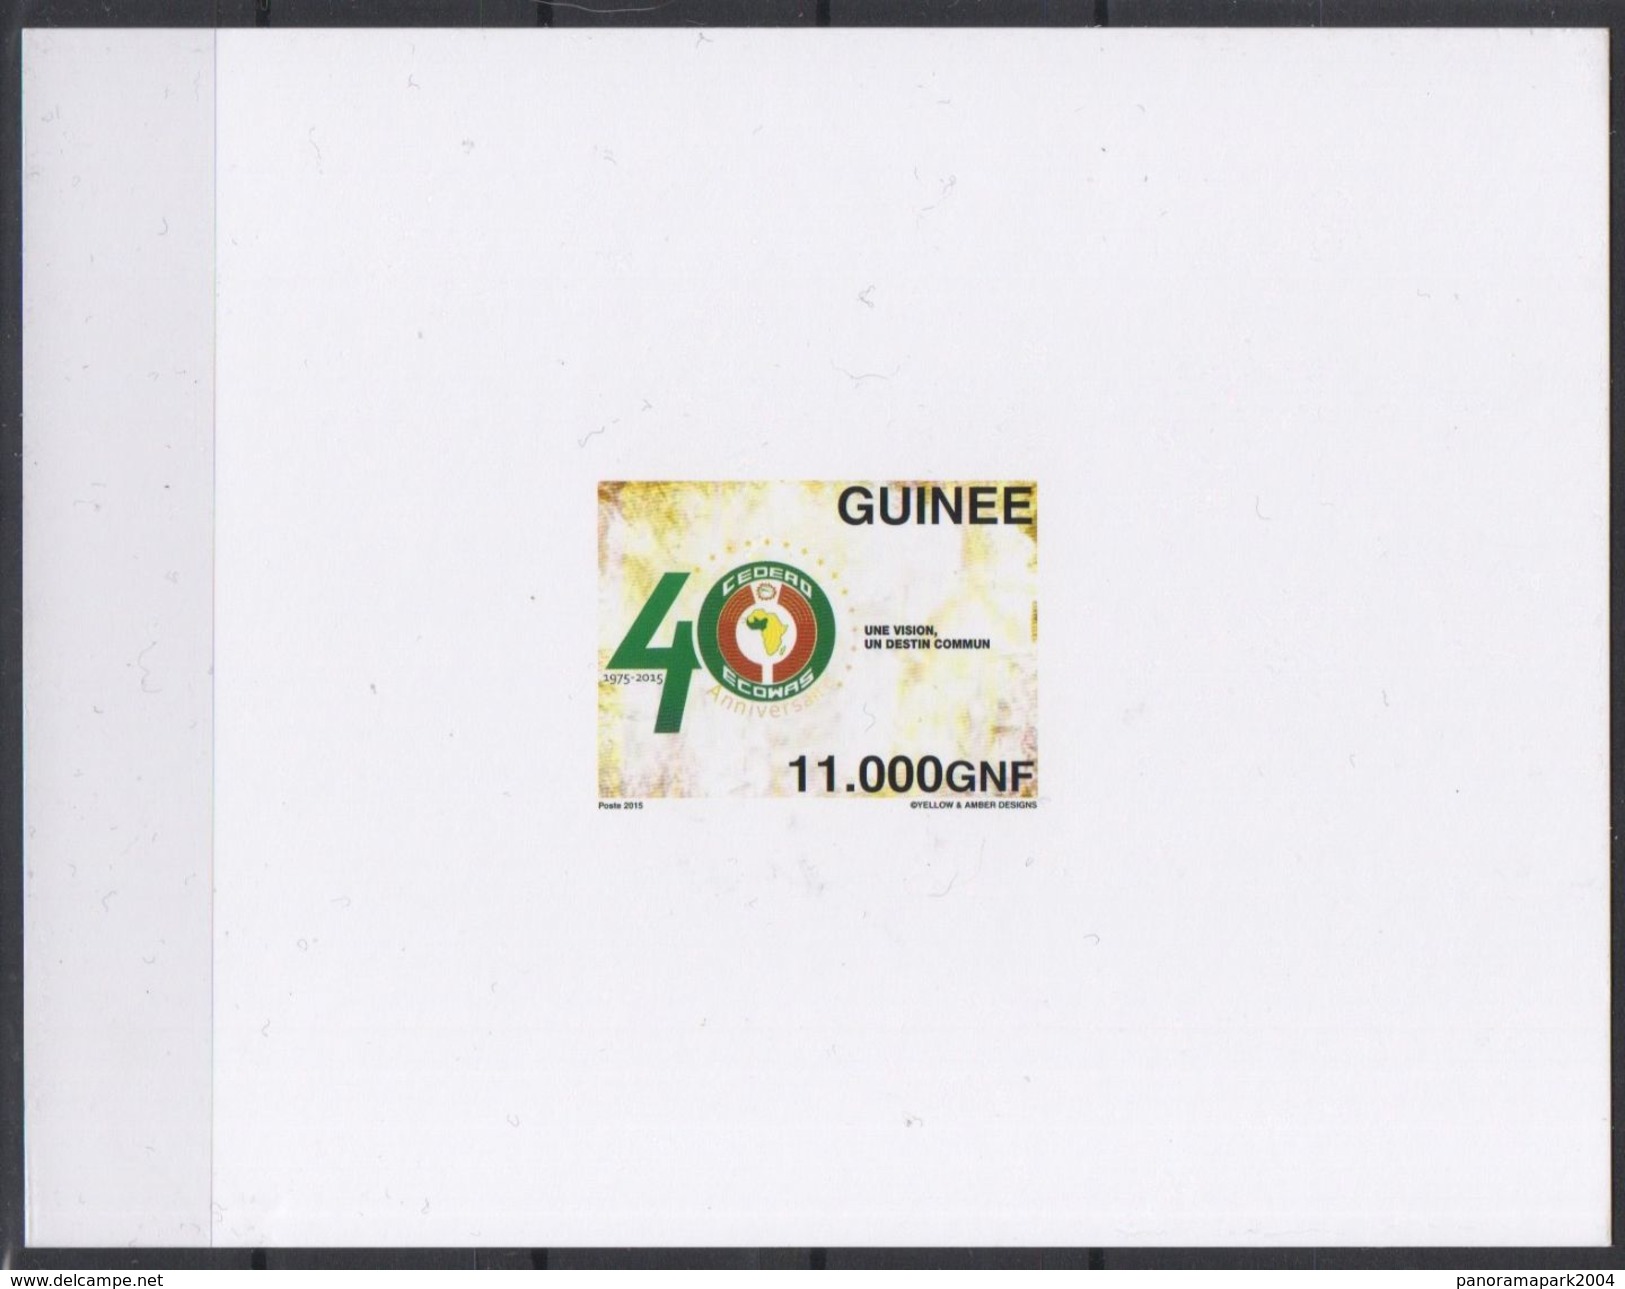 Guinée 2015 Scarce Proof EPREUVE DE LUXE Emission Commune Joint Issue CEDEAO ECOWAS 40 Ans 40 Years - Gemeinschaftsausgaben